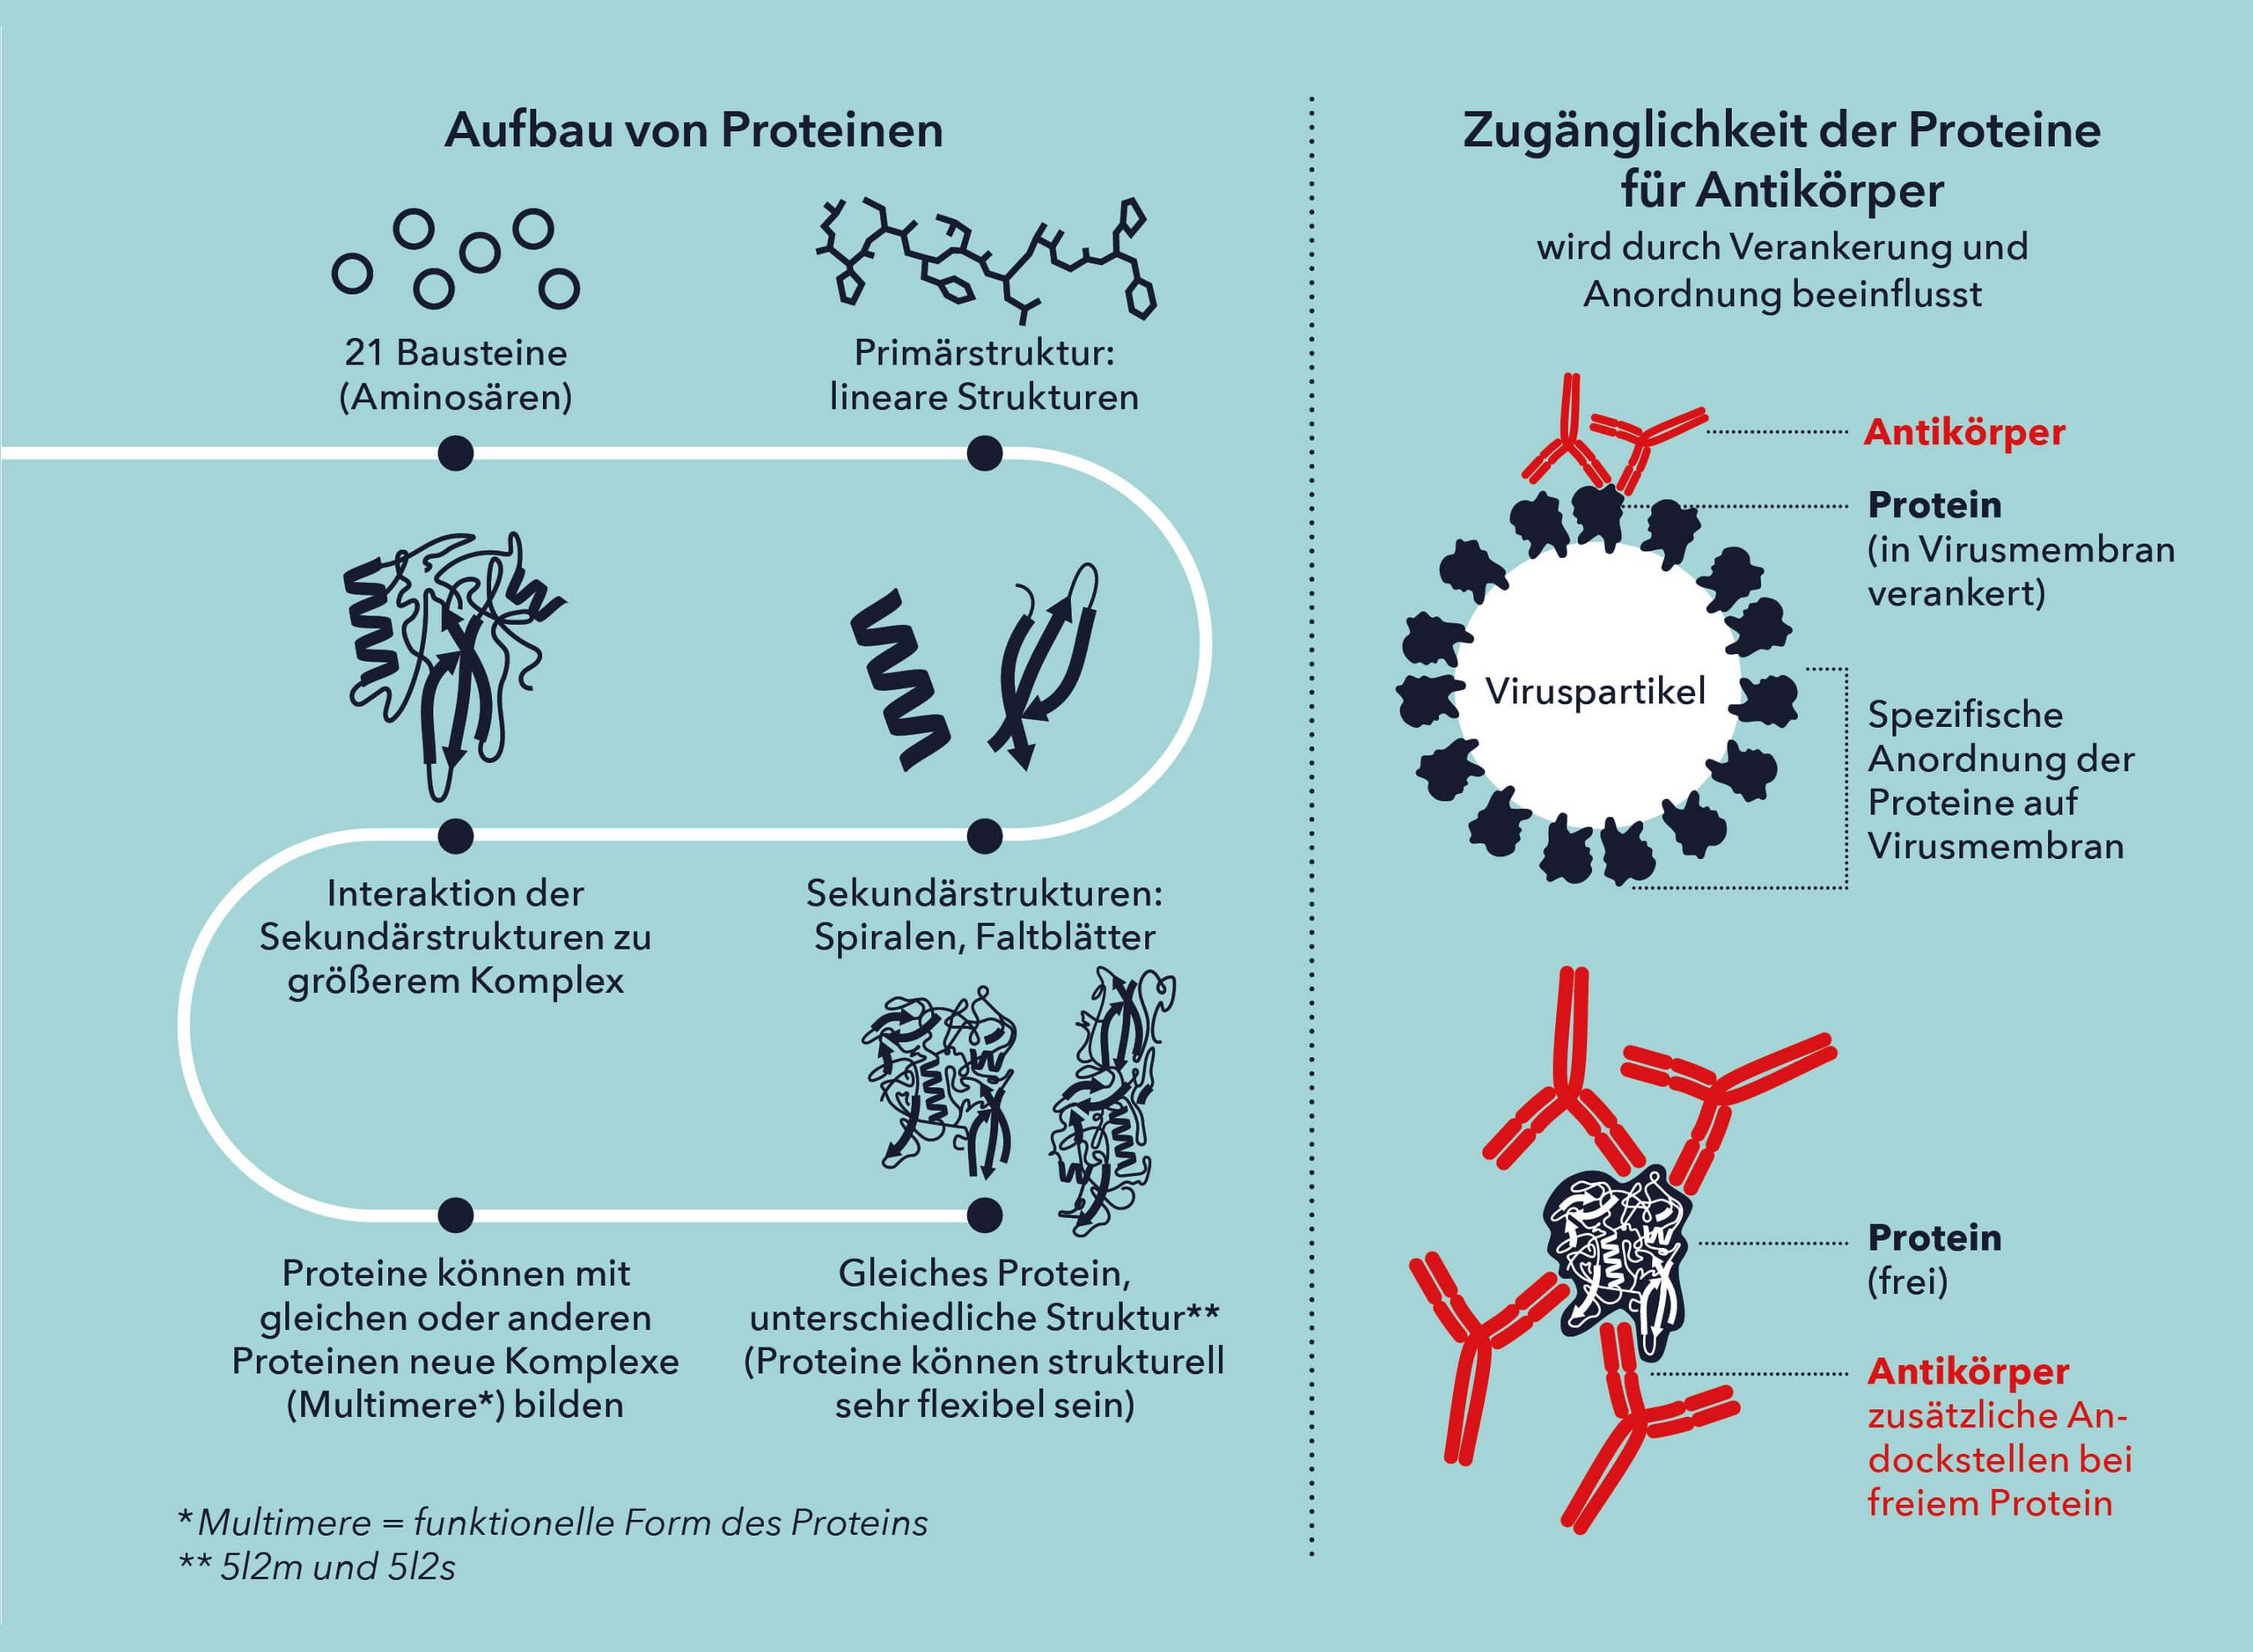 Aufbau von Proteinen und Zugänglichkeit der Proteine für Antikörper. Illustration: Matthias Moser/Vetmeduni